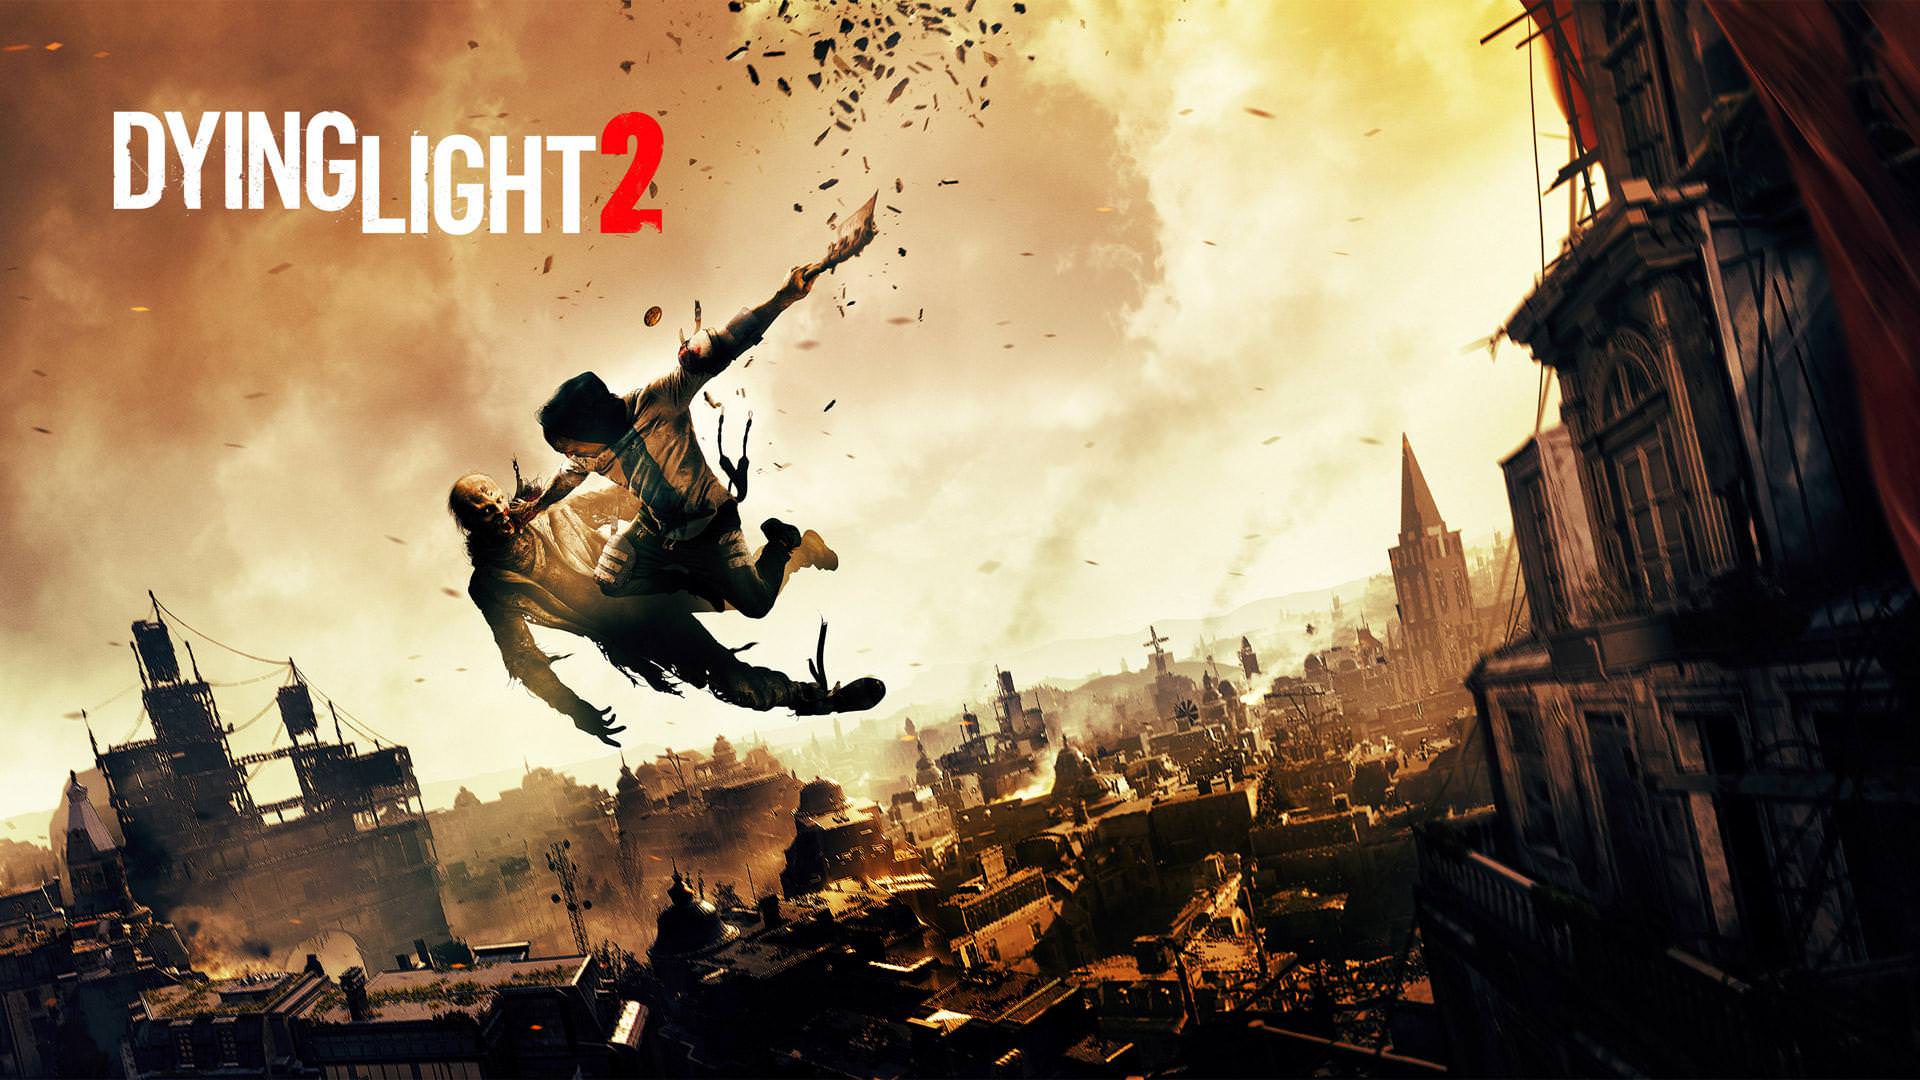 رویدادهای بیشتر در دنیای Dying Light 2 نسبت به بازی اول